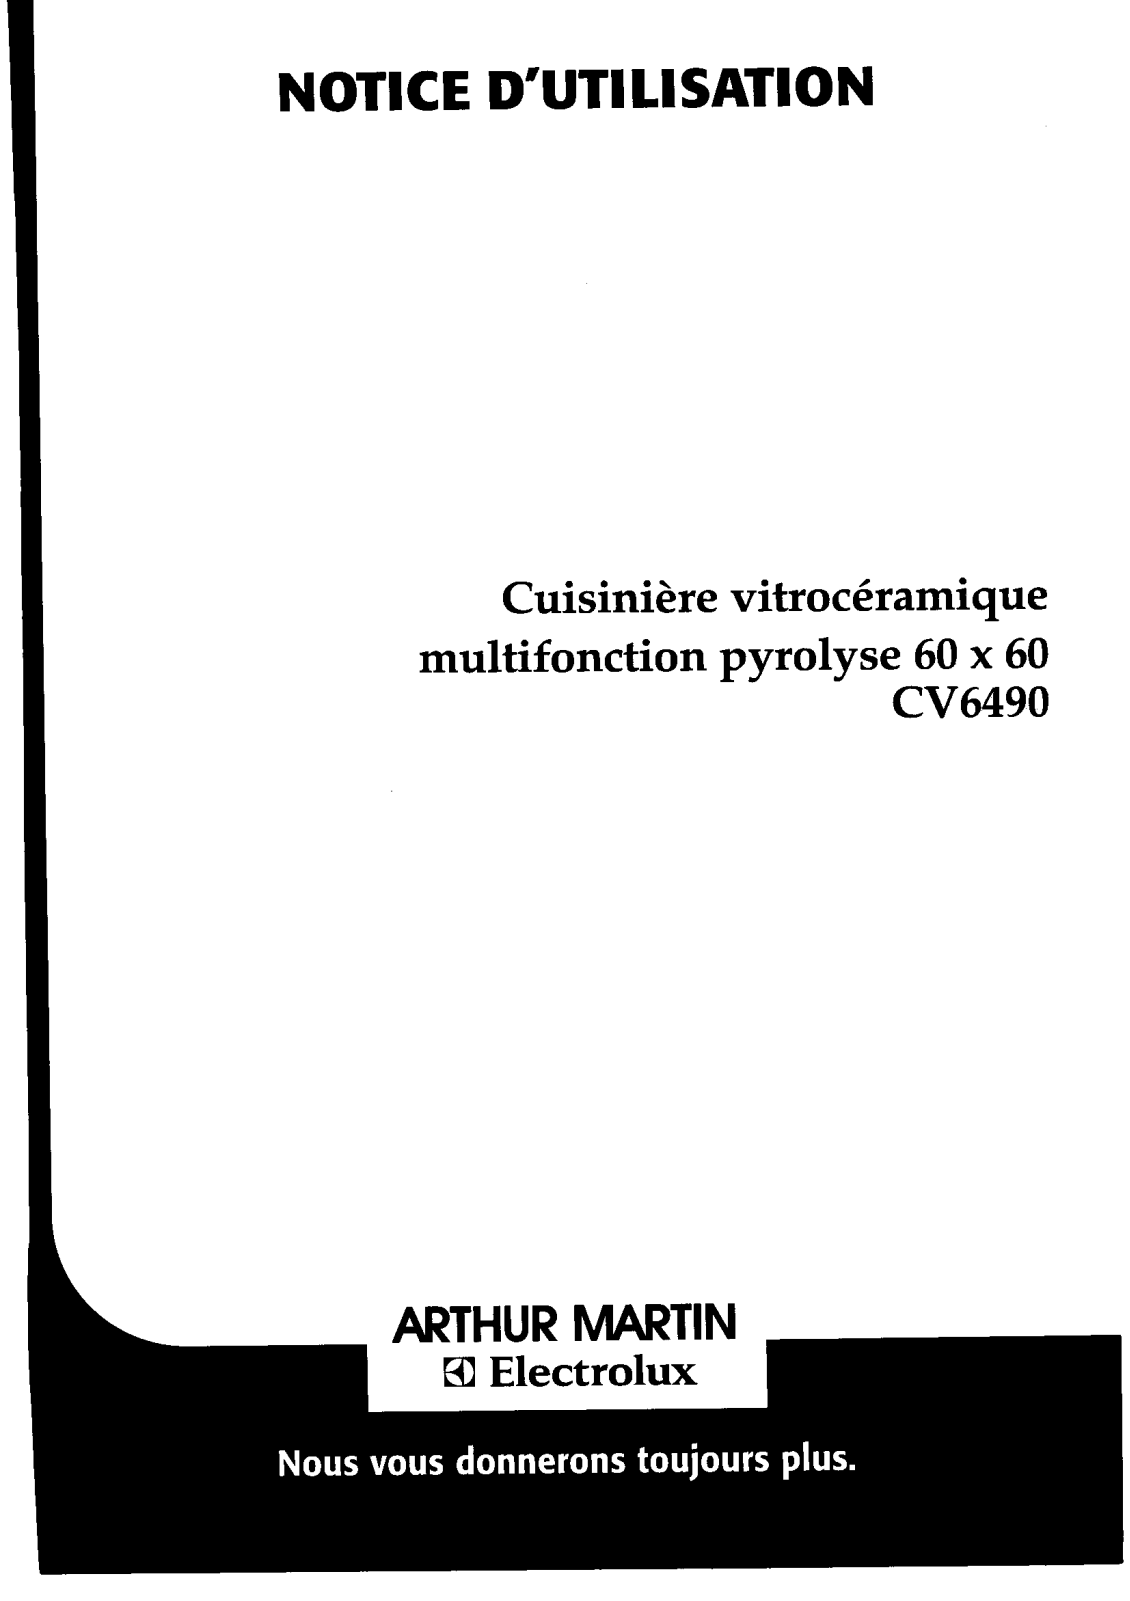 Arthur martin CV6490 User Manual